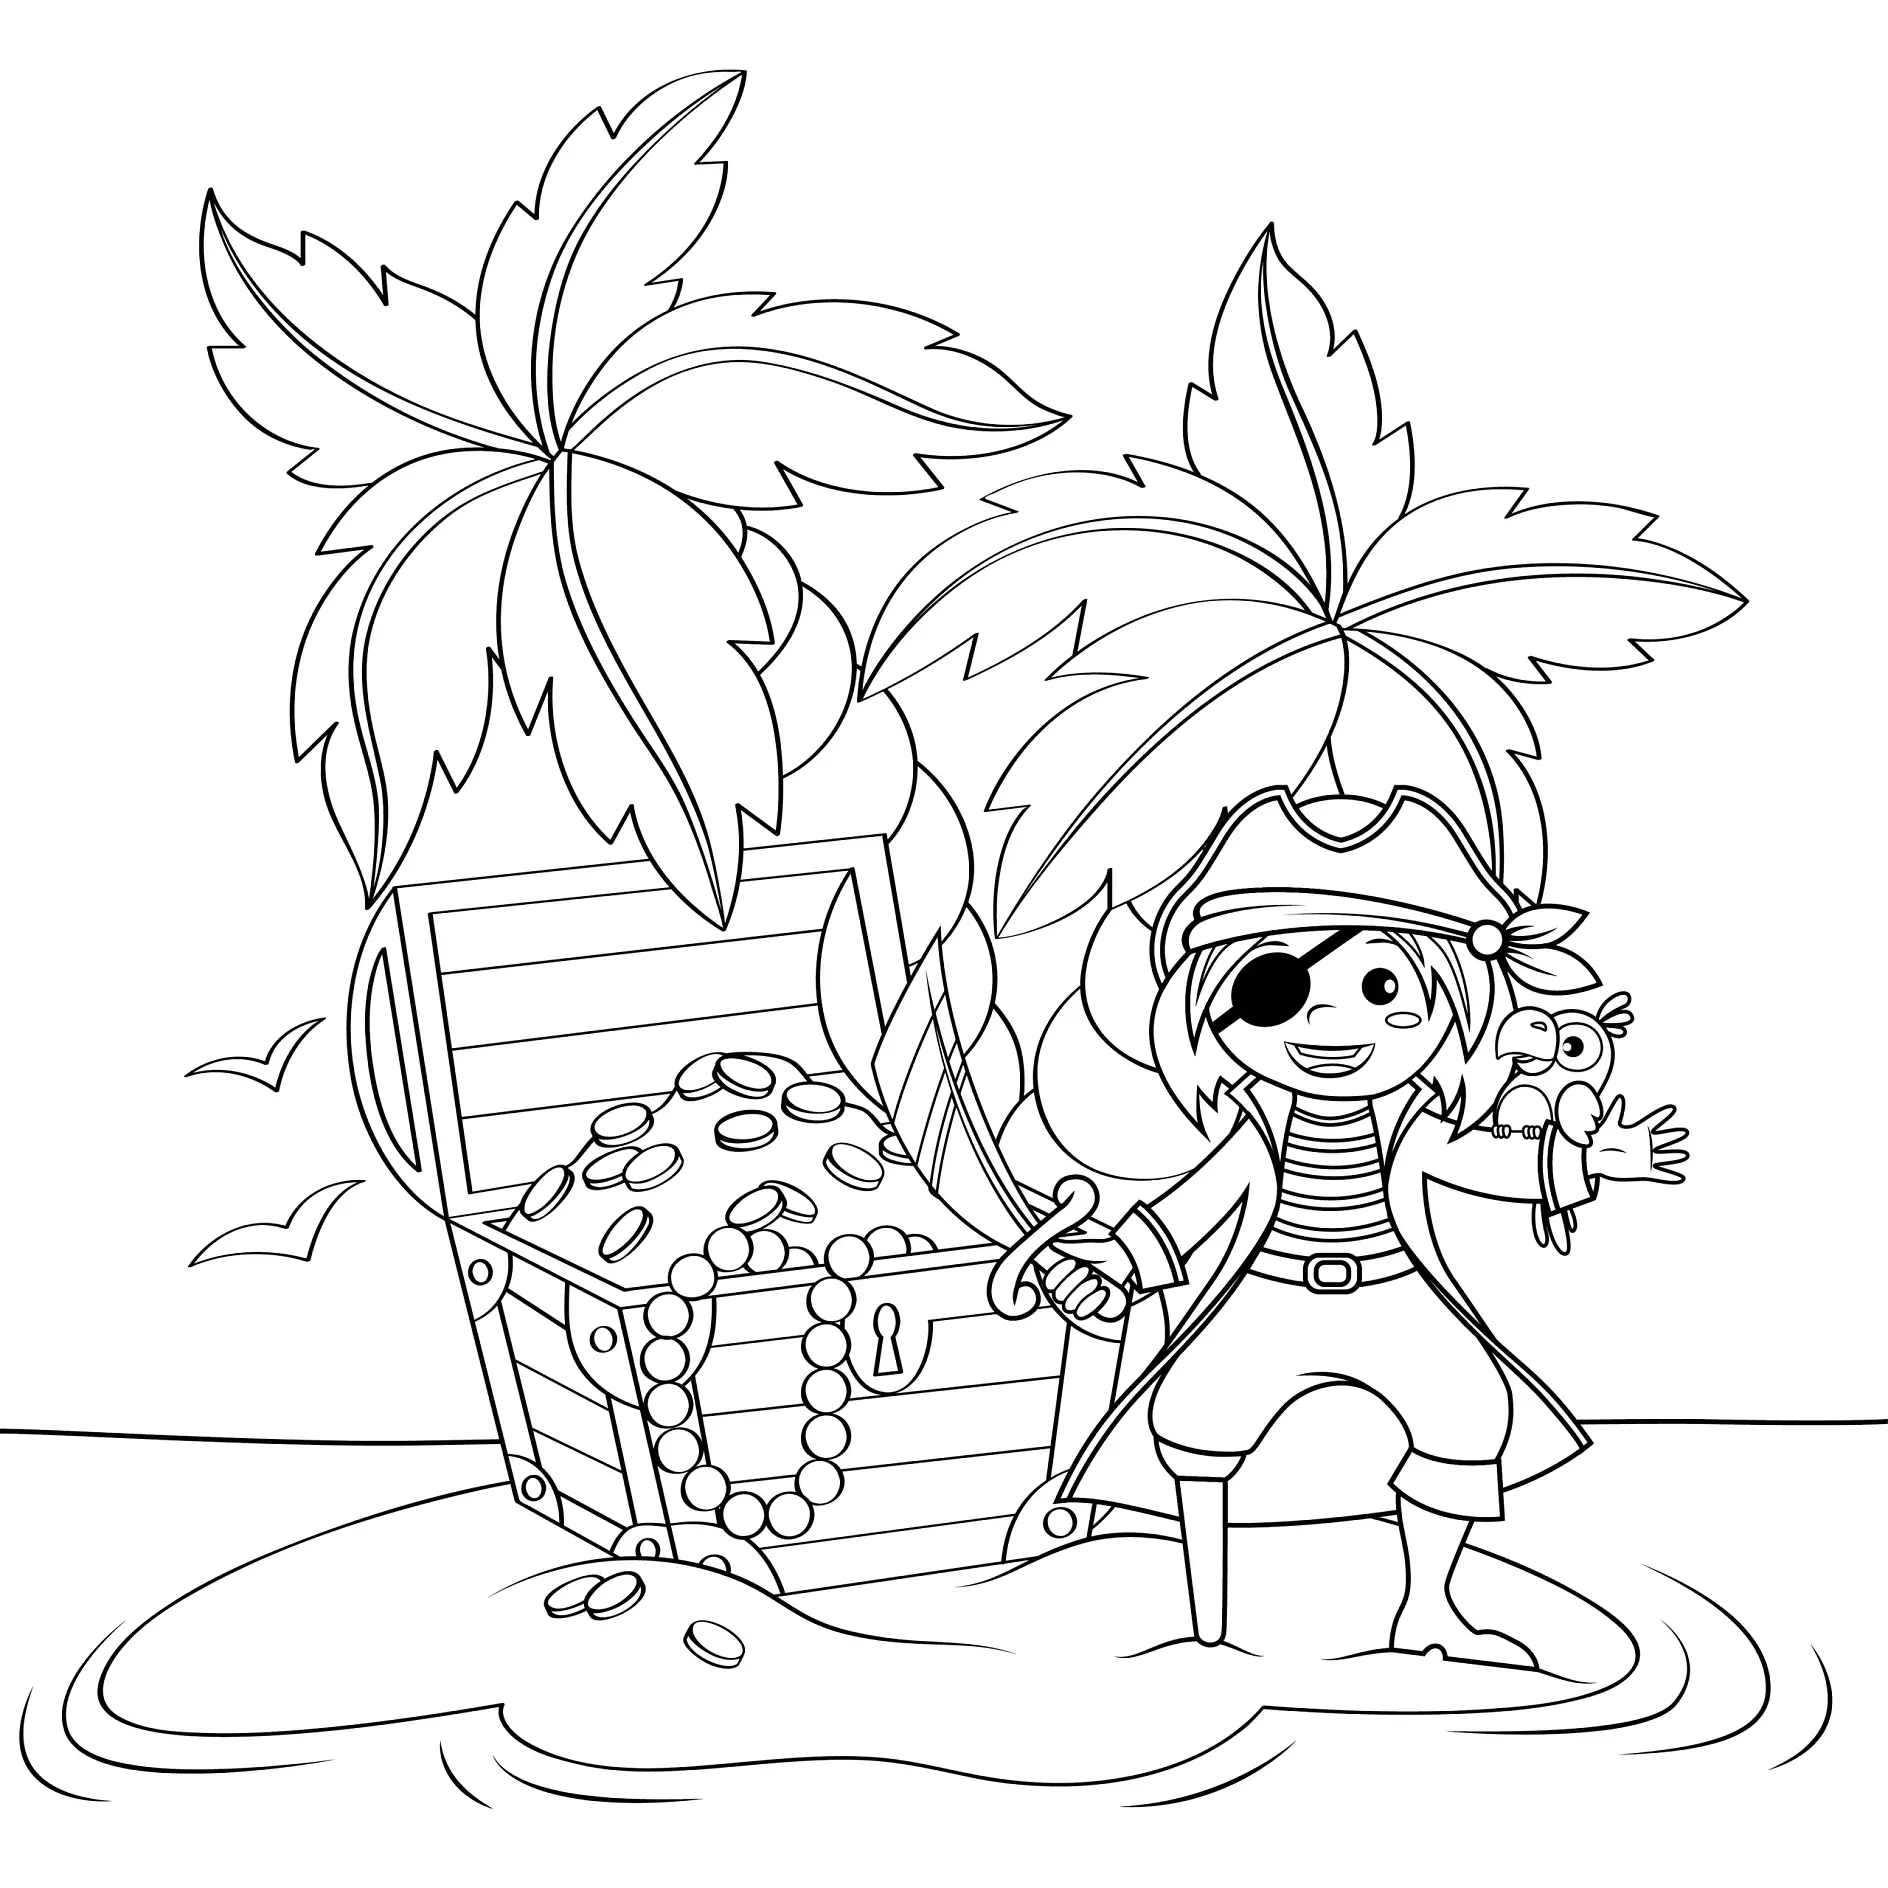 Ausmalbild Pirat mit Schatzkiste und Papagei unter Palmen